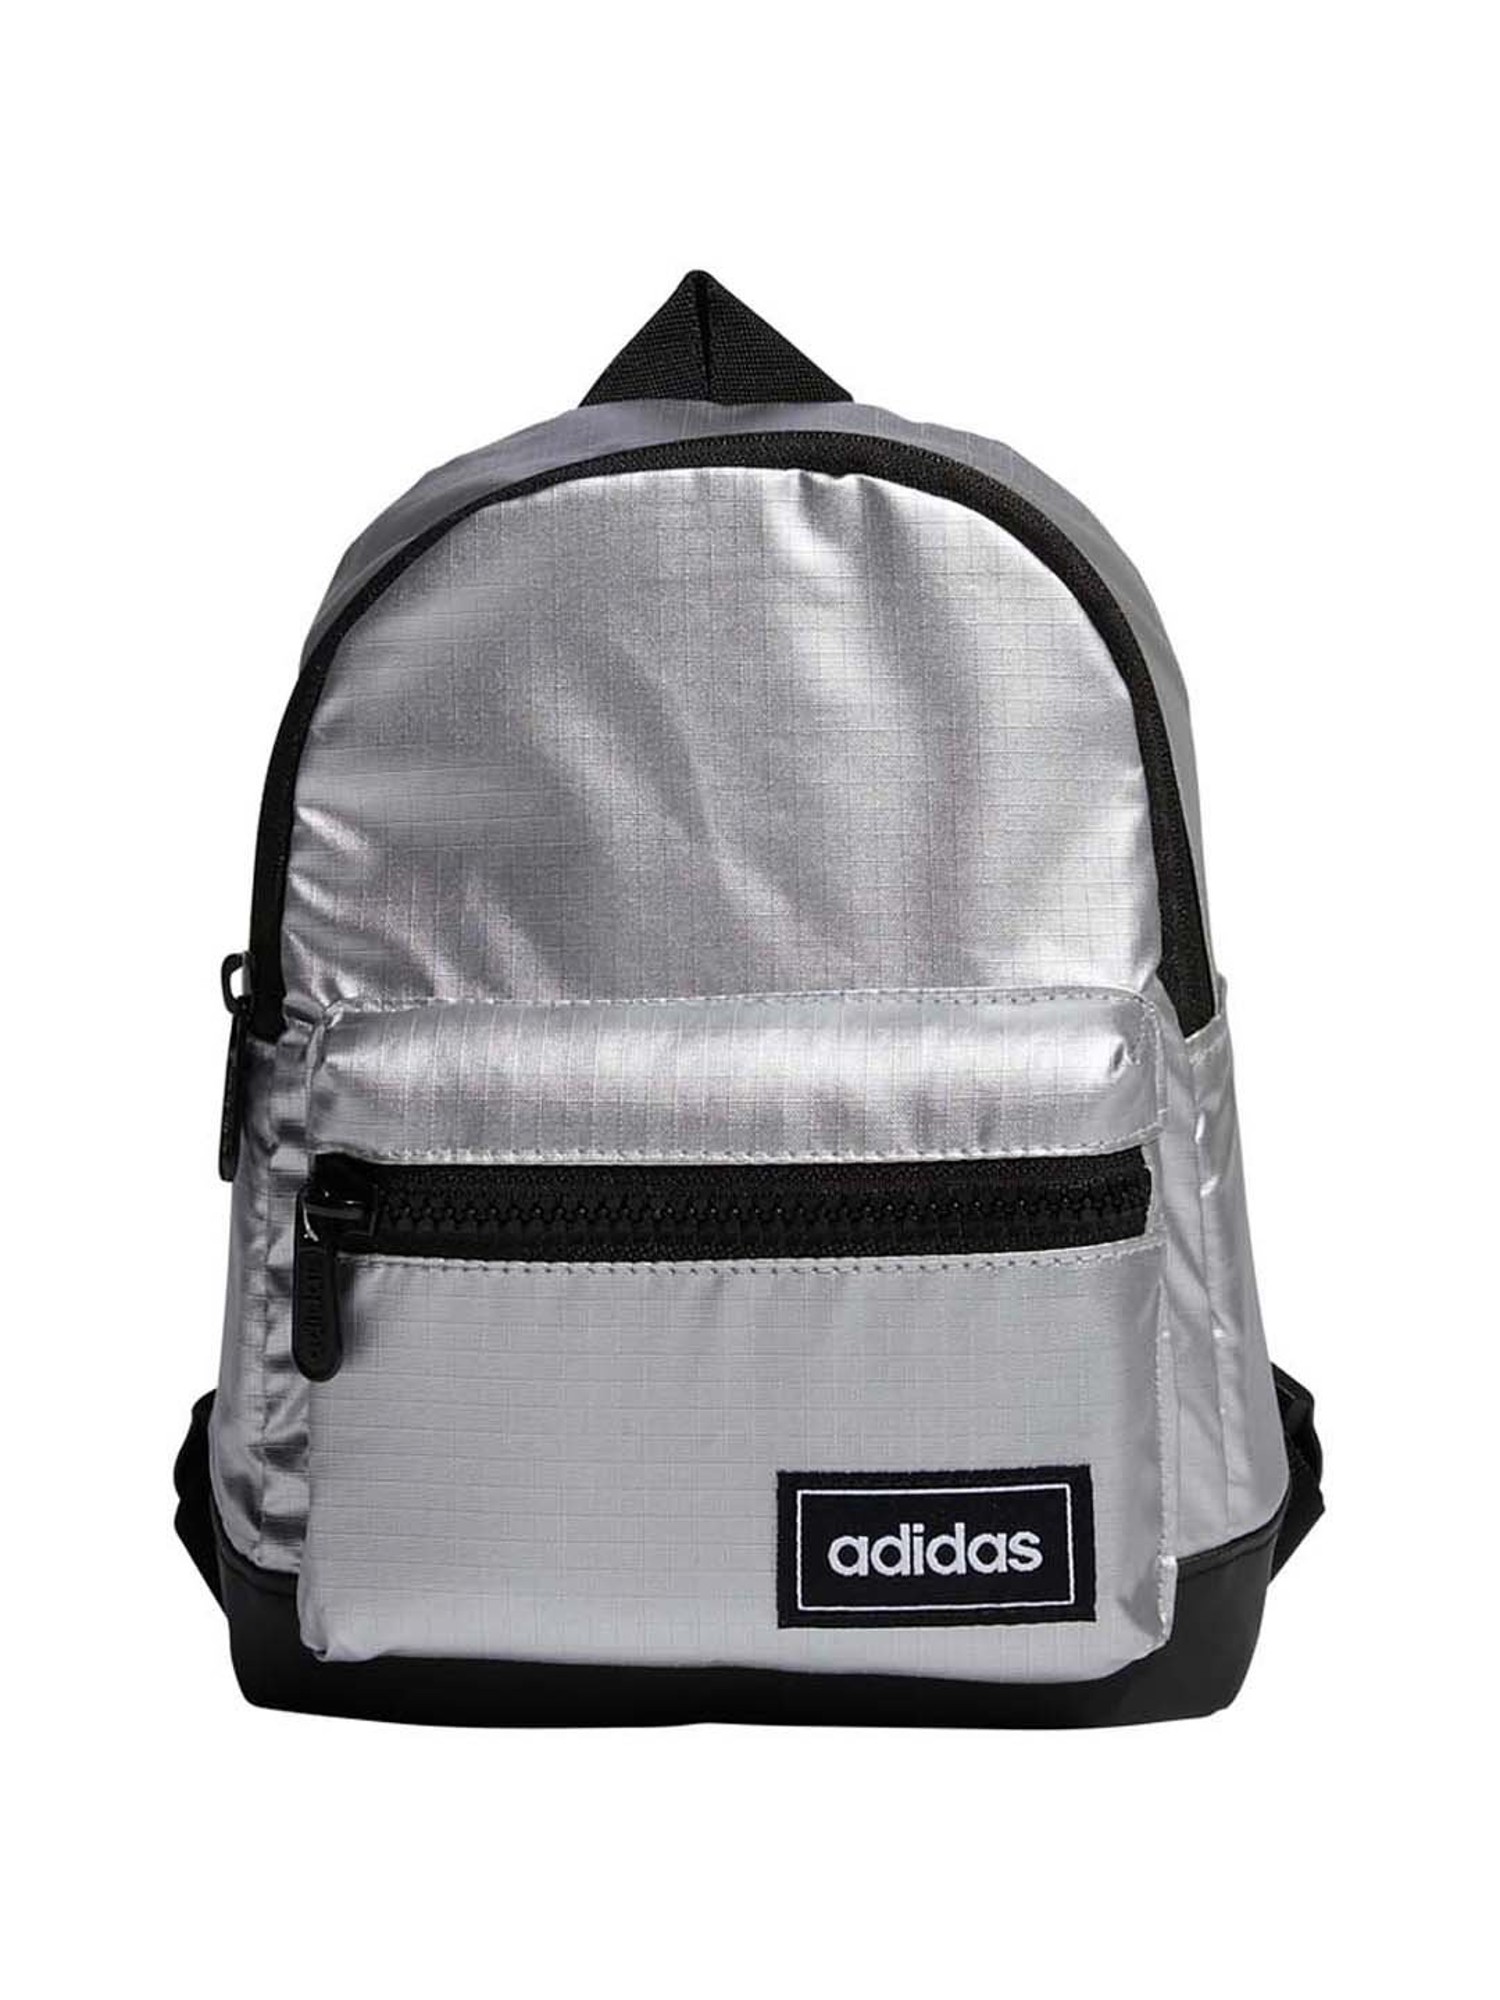 adidas favorite backpack